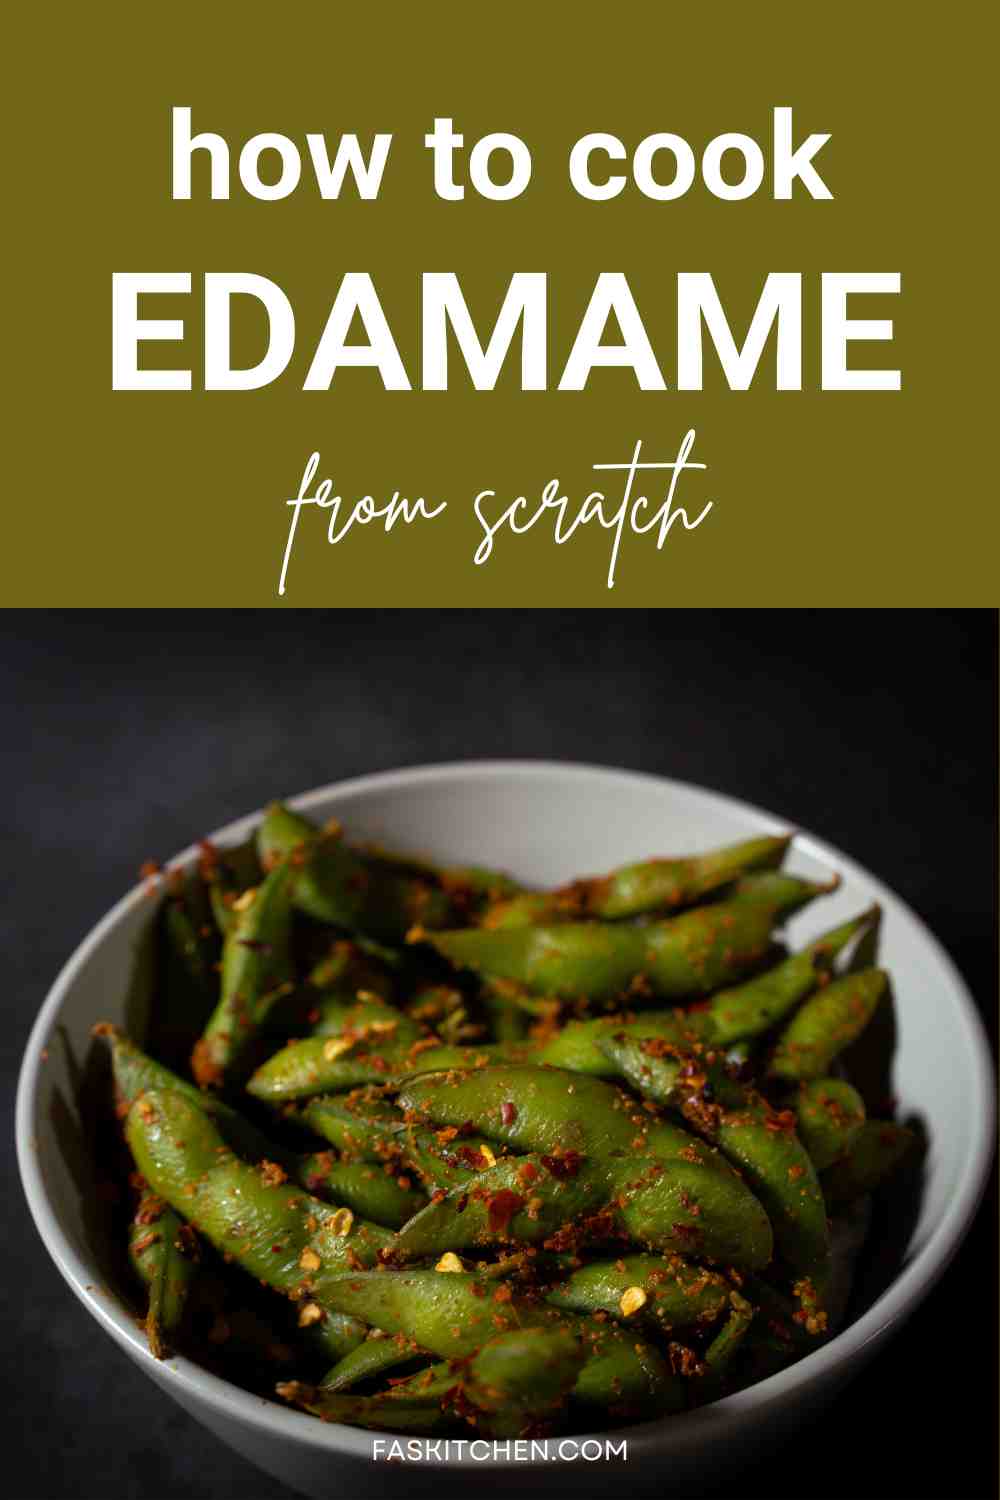 Edamame cooking